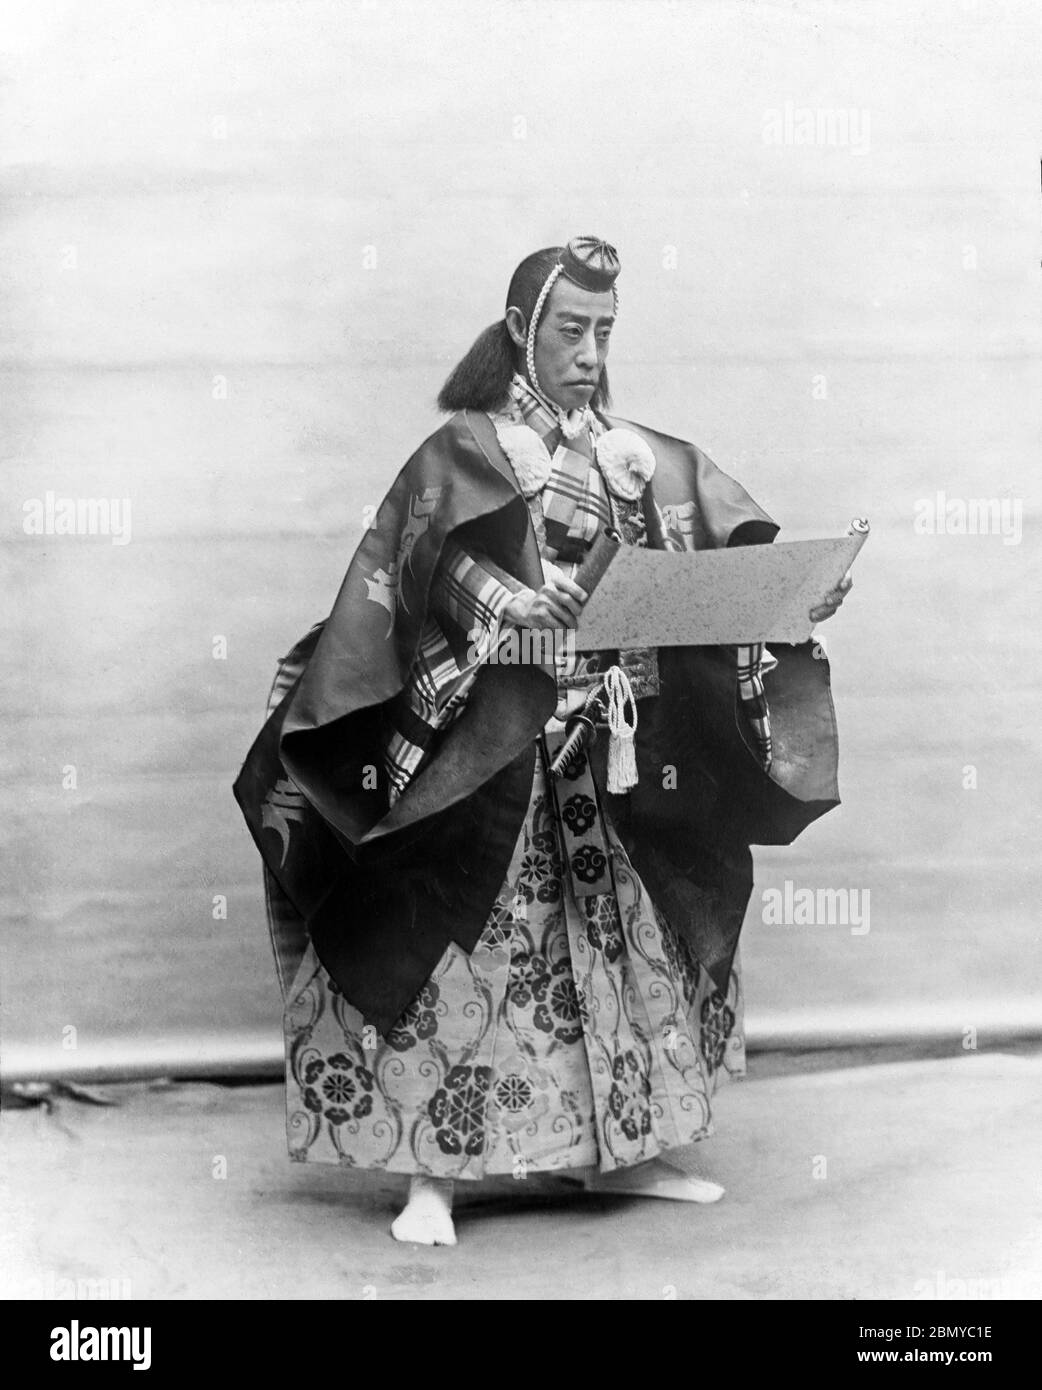 [ 1890 Japon - Kabuki Actor Ichikawa Danjuro IX ] — Kabuki Actor japonais Ichikawa Danjuro IX (九代目 市川 團十郎, 1838-1903). Danjuro est l'un des acteurs Kabuki les plus connus et les plus réussis de la période Meiji (1868-1912). D'une série de diapositives en verre publiées (mais non photographiées) par le photographe écossais George Washington Wilson (1823–1893). La société Wilson était l’un des plus grands éditeurs de tirages photographiques au monde. diapositive en verre vintage du xixe siècle. Banque D'Images